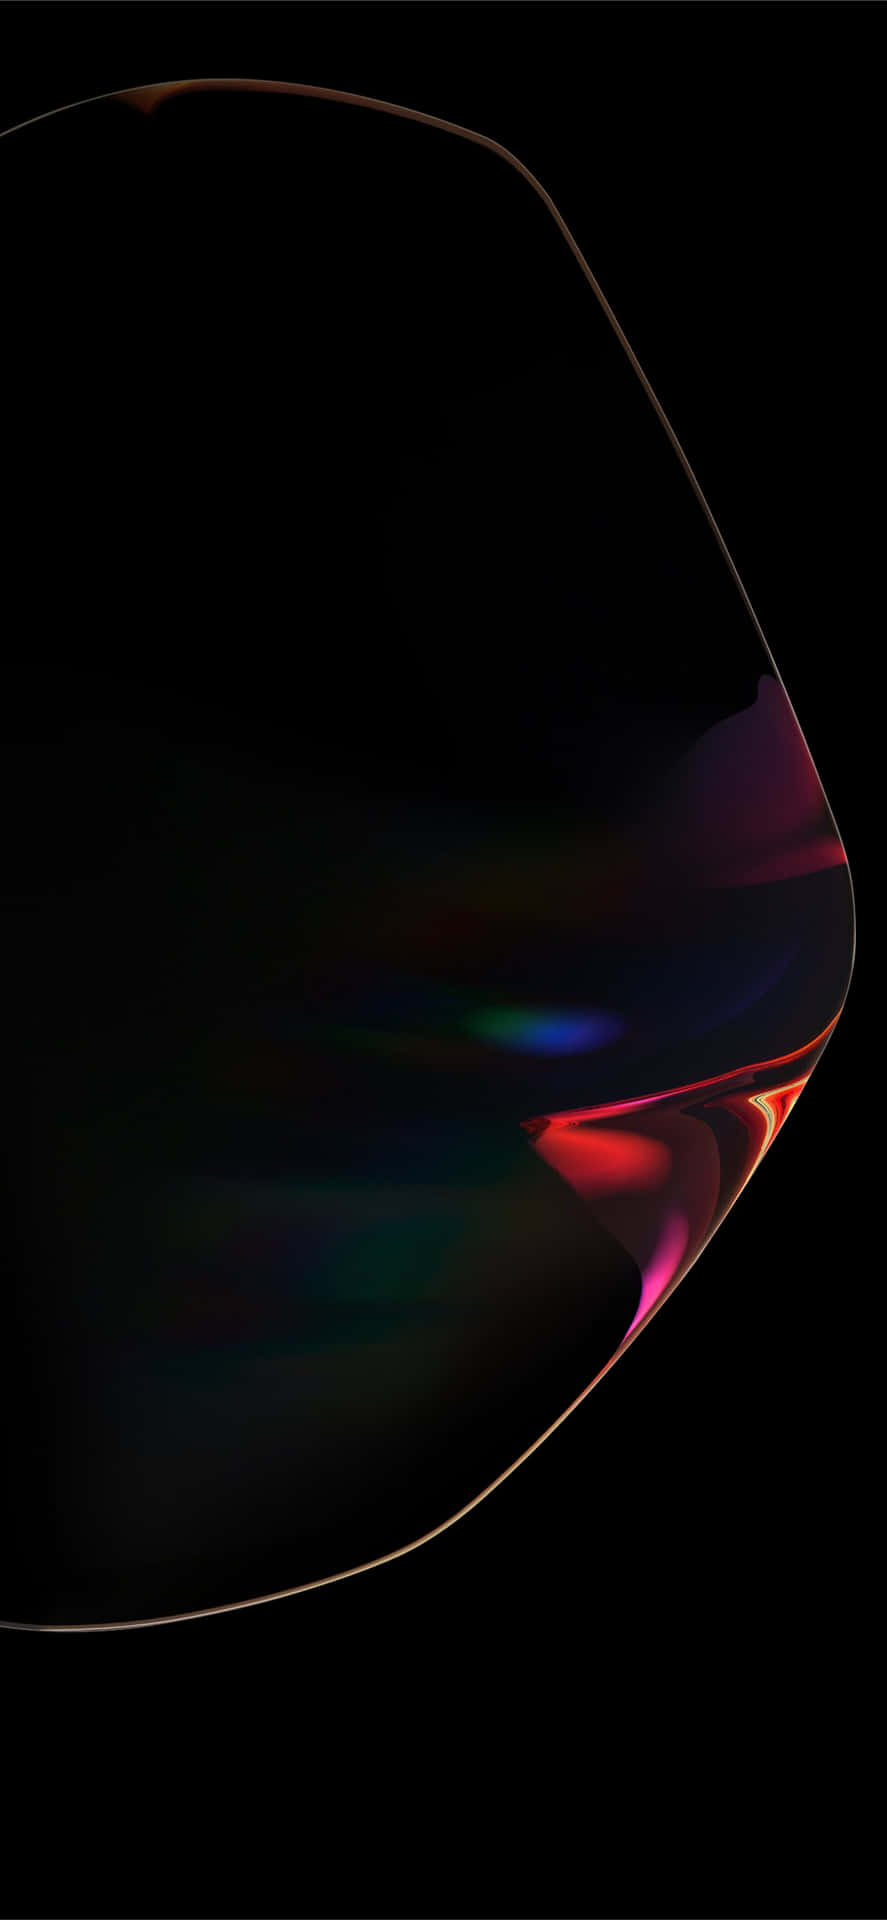 Et nærbillede af et sort objekt med et regnbuefarvet lys, der reflekteres væk fra det. Wallpaper